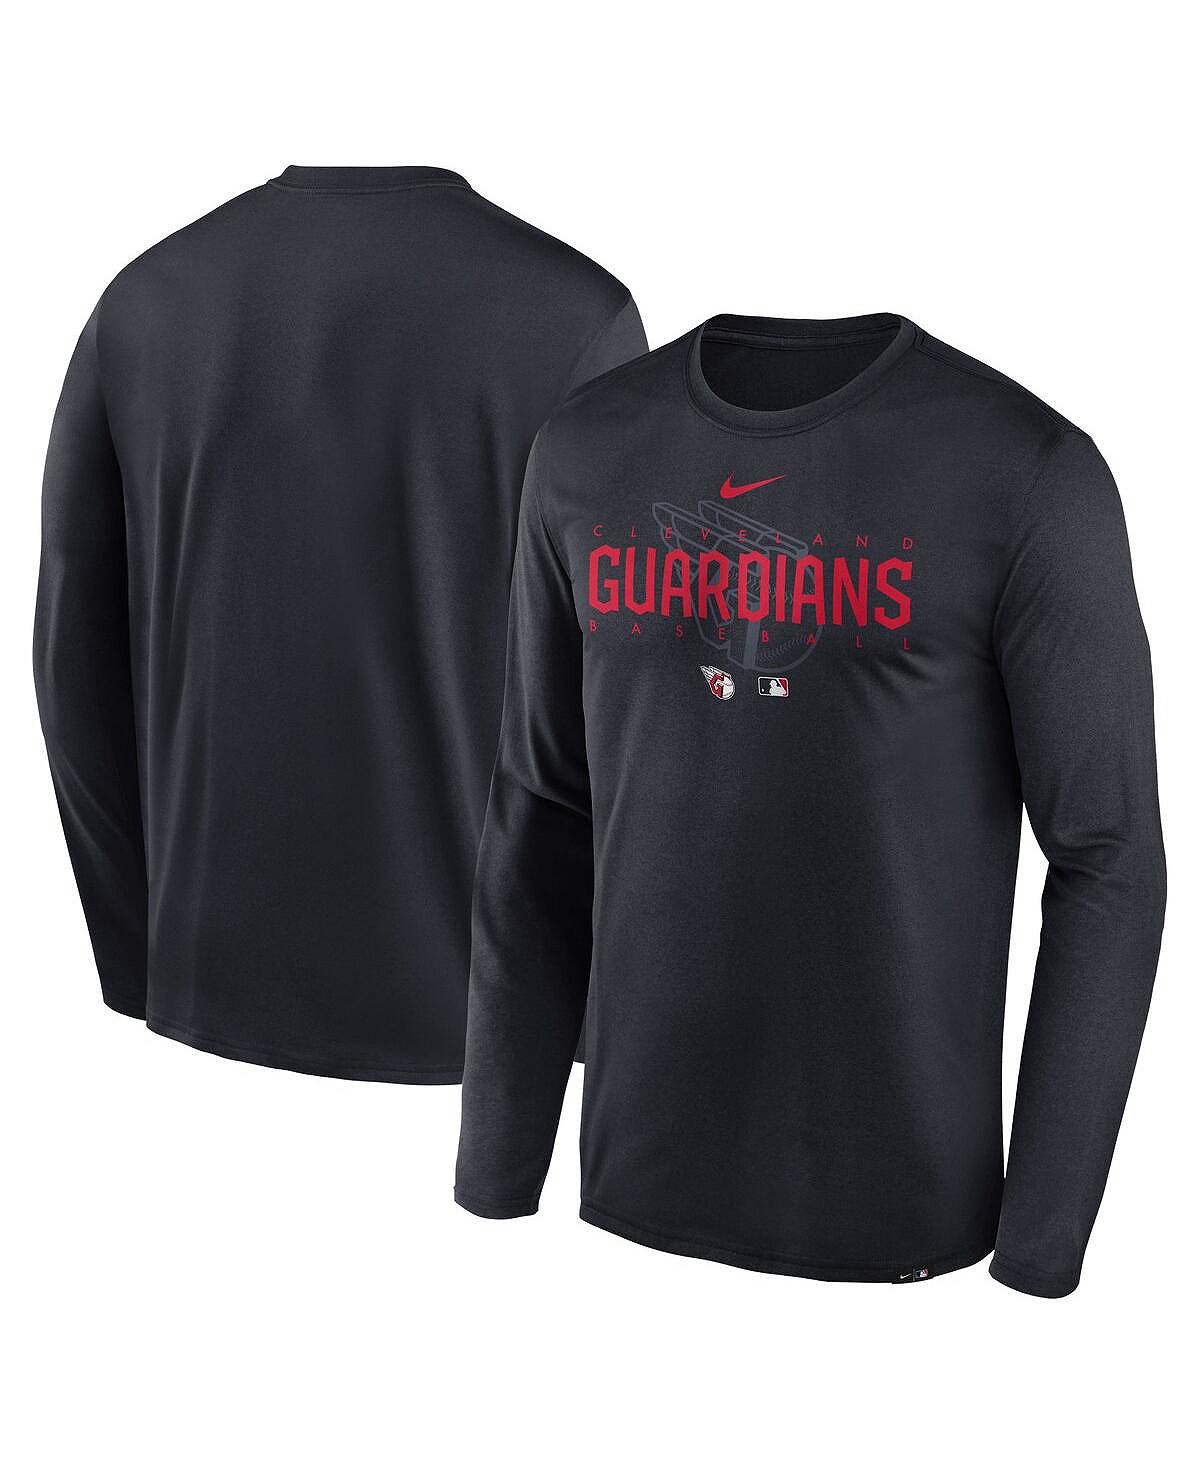 Мужская темно-синяя футболка с длинным рукавом с логотипом команды Cleveland Guardians Authentic Collection Legend Performance Nike